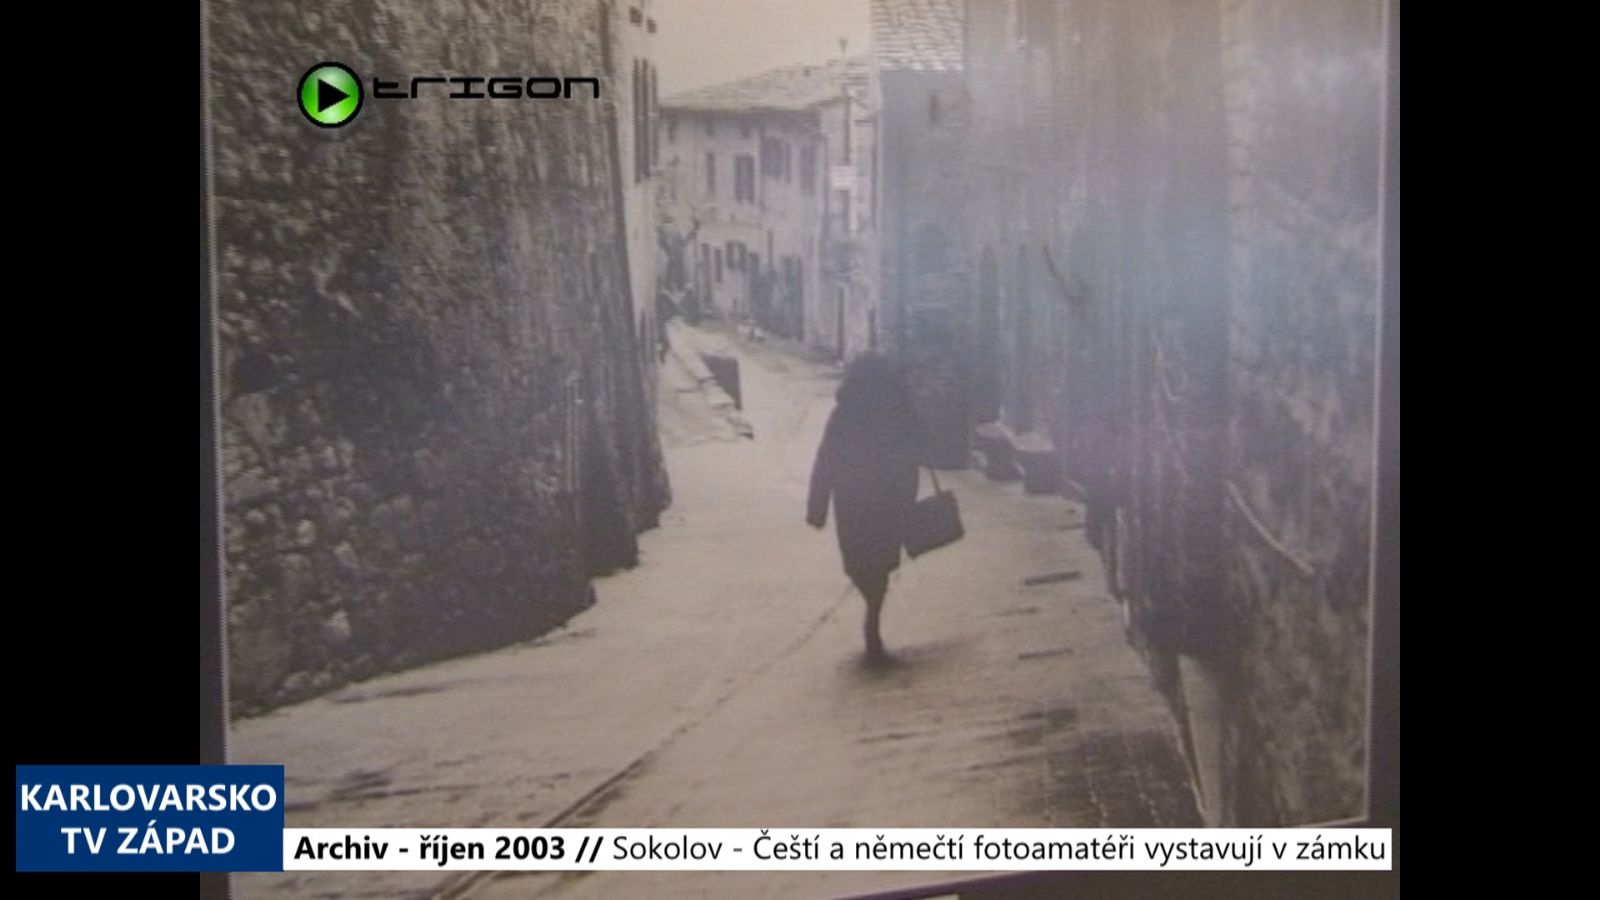 2003 – Sokolov: Čeští a němečtí fotoamatéři vystavují v zámku (TV Západ)